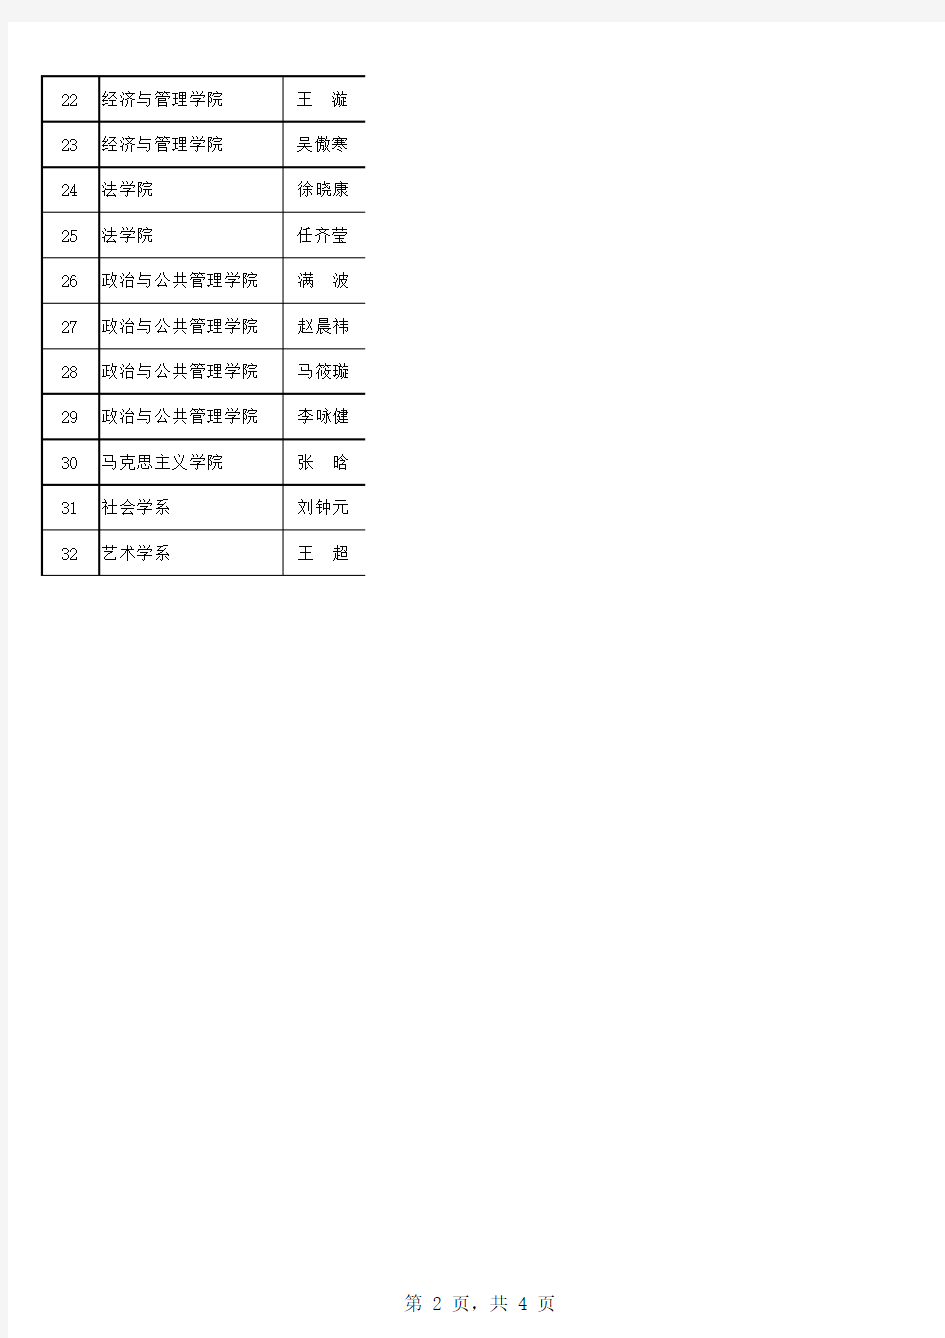 武汉大学2014年度国家大学生创新创业训练计划立项评审名单